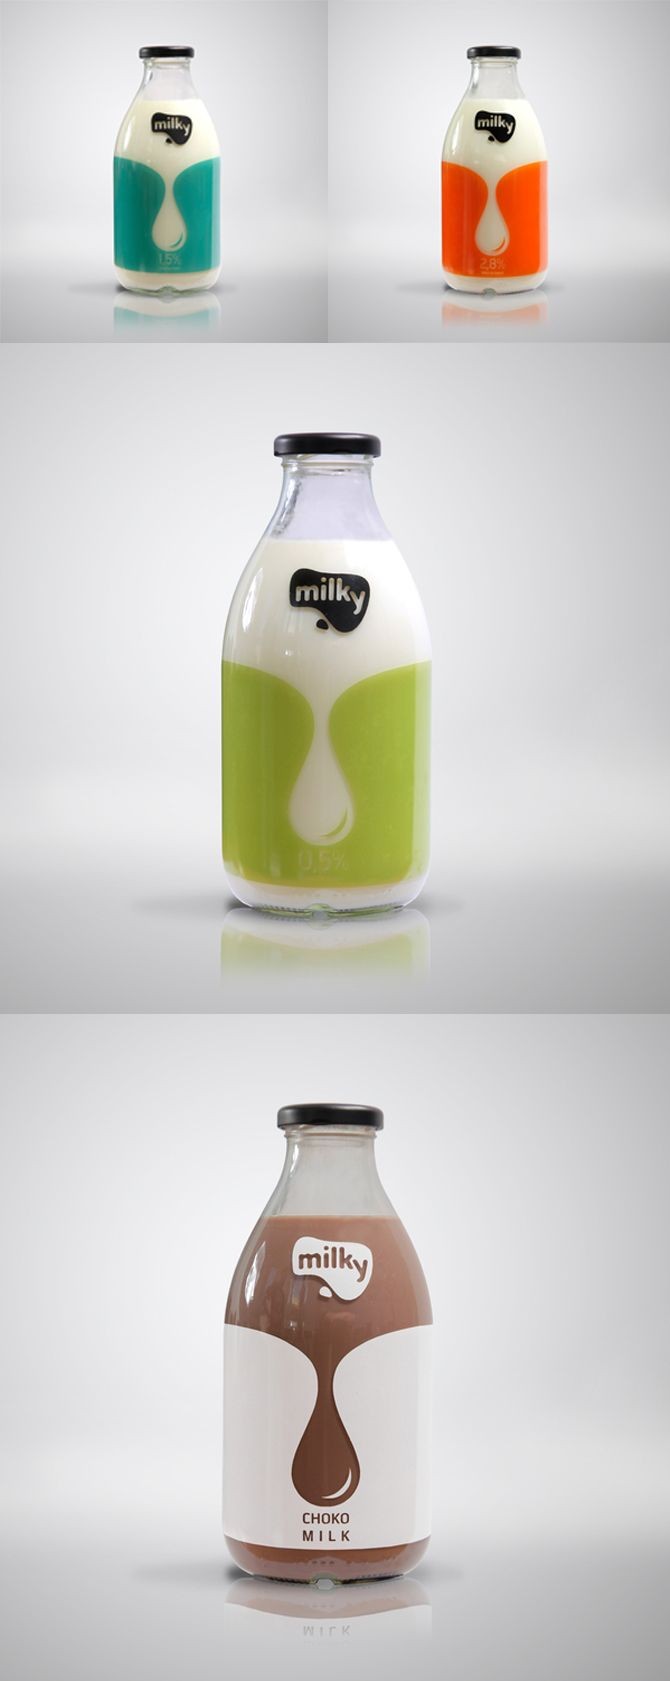 Milk Packaging Designs For Inspiration - We Design...